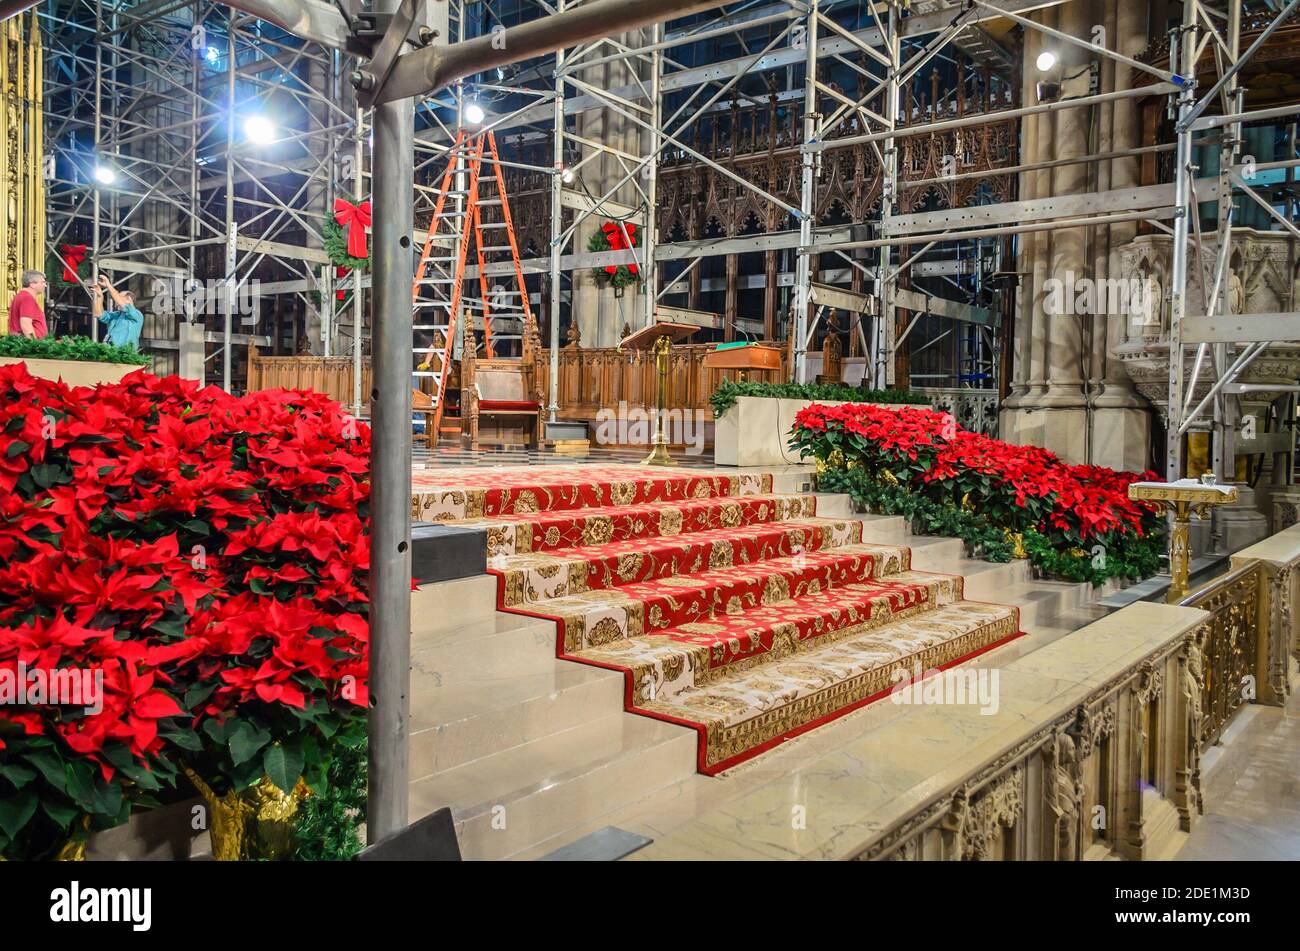 Intérieur de la cathédrale Saint-Patrick. Travaux de rénovation en cours. Décoration de Noël avec fleurs rouges. Manhattan, New York, États-Unis Banque D'Images